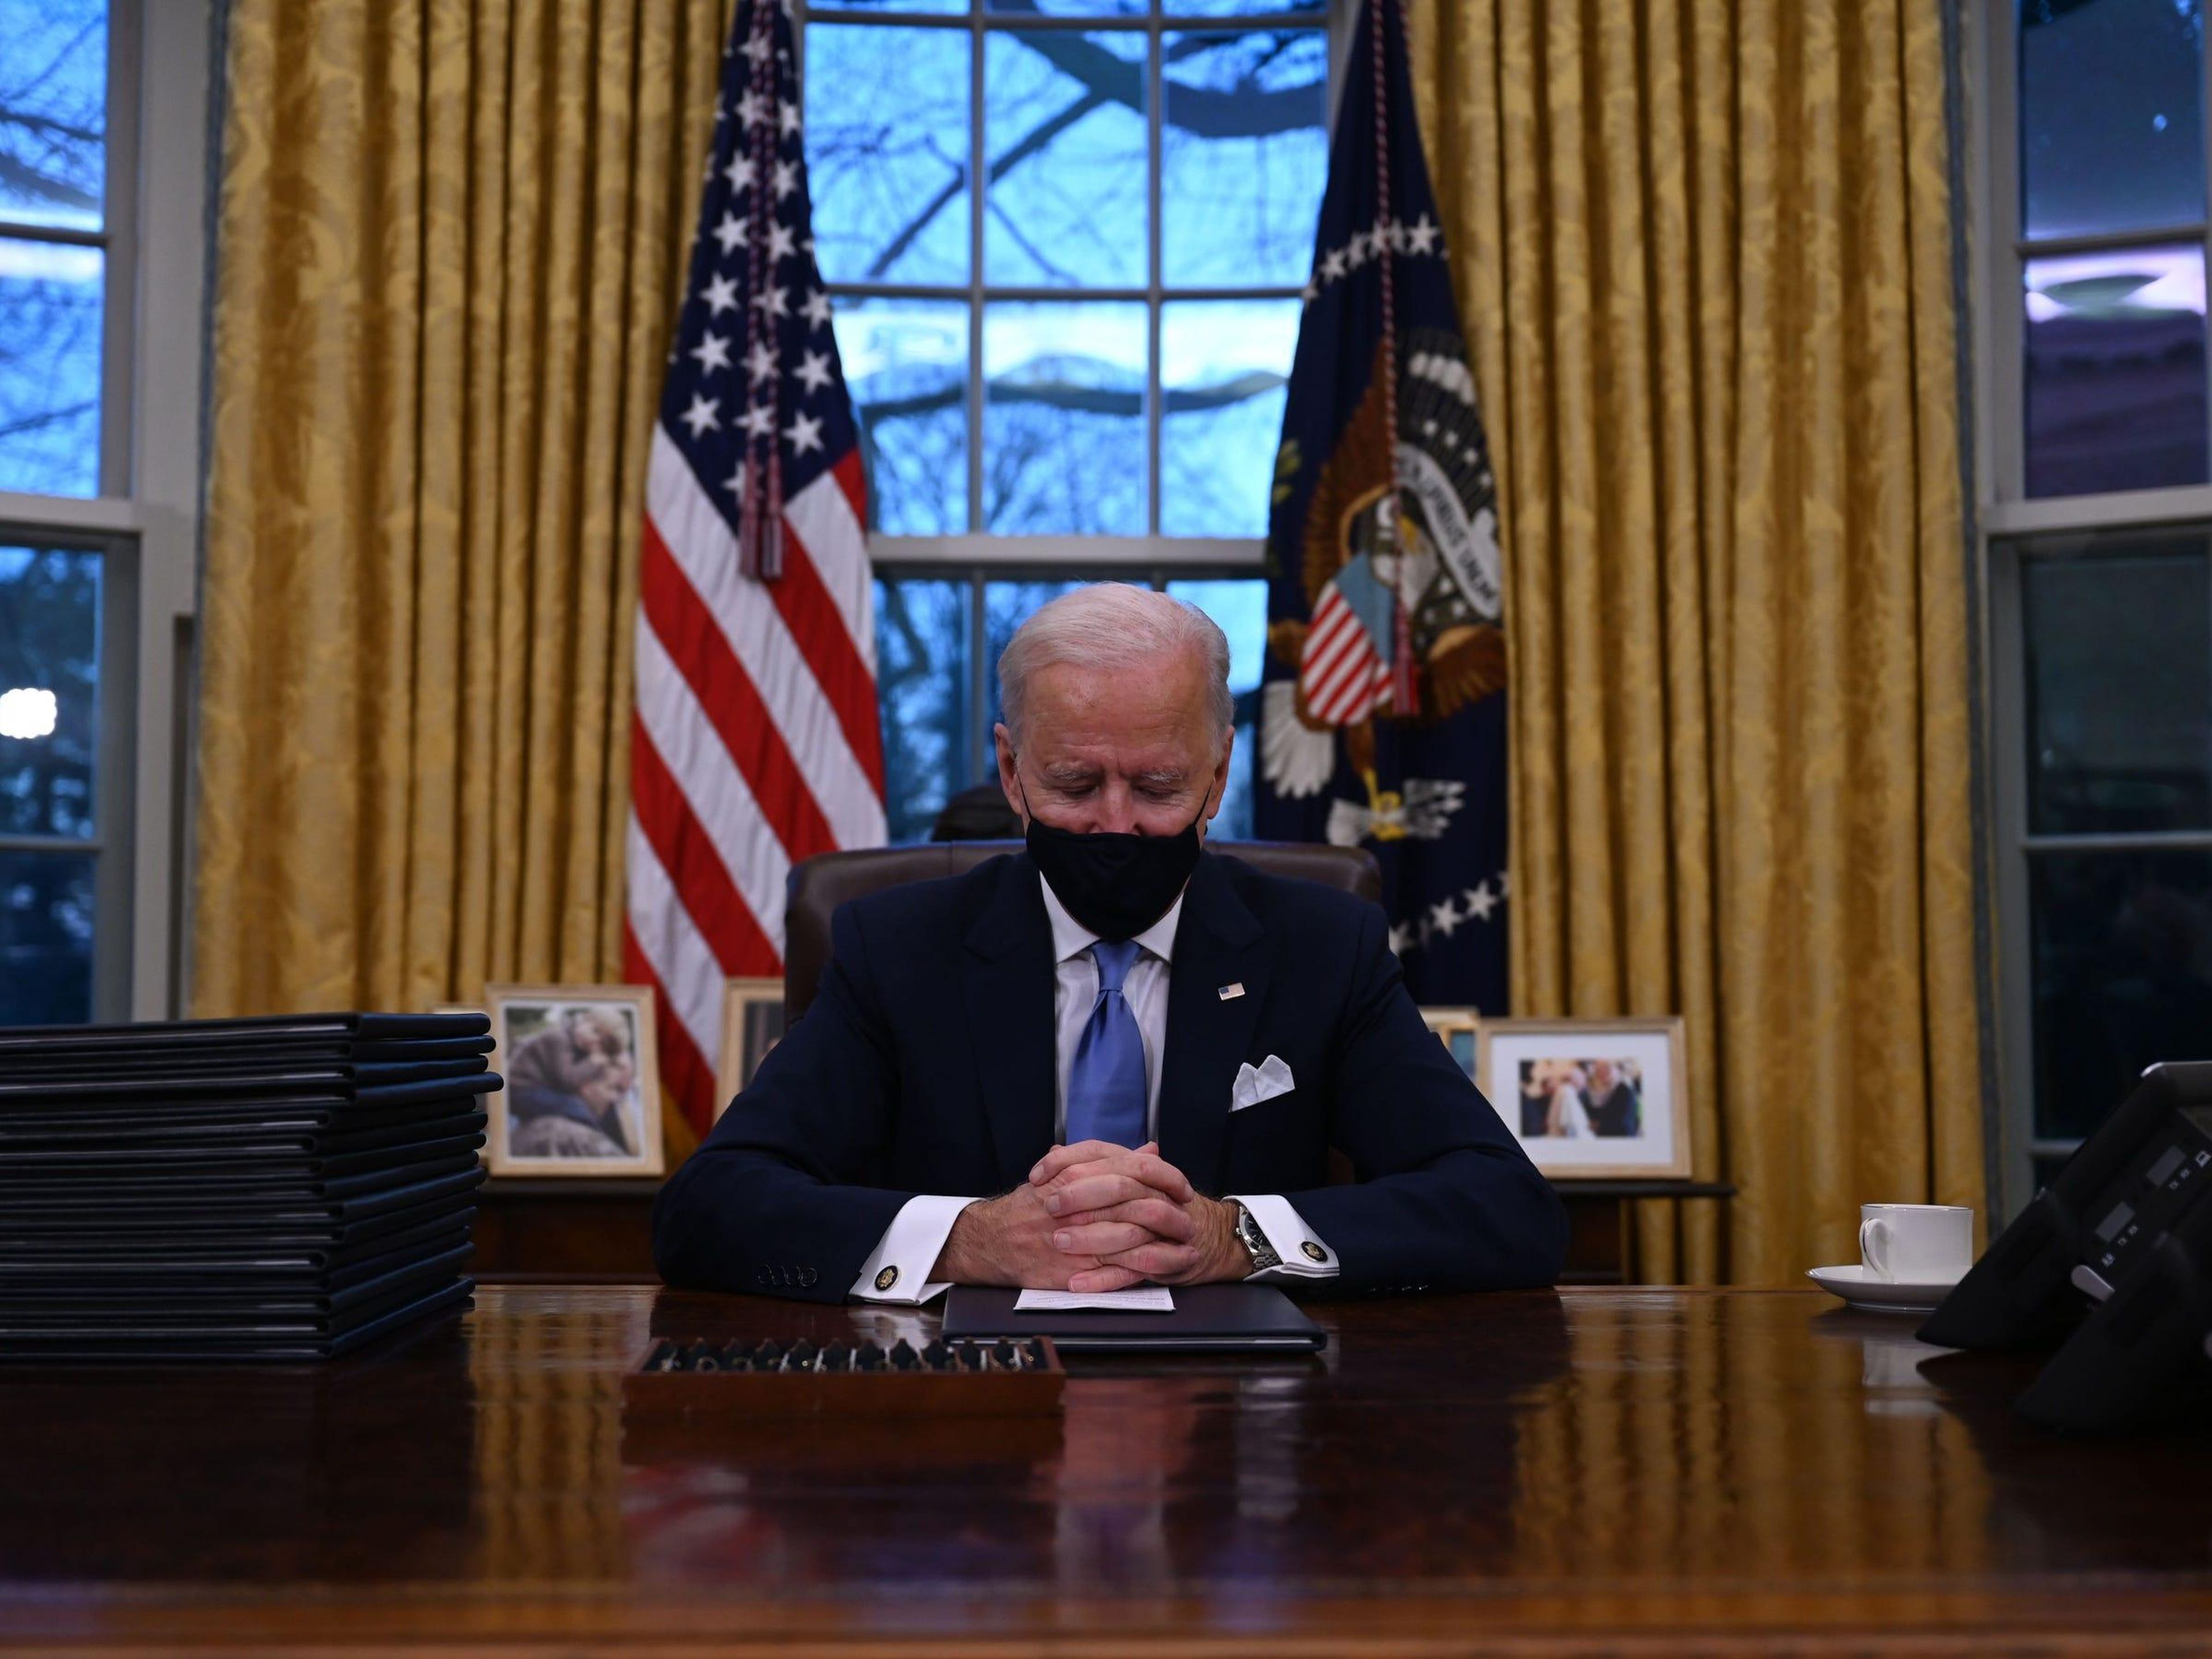 El presidente Biden se sienta frente a una bandera estadounidense y otra de sello presidencial.